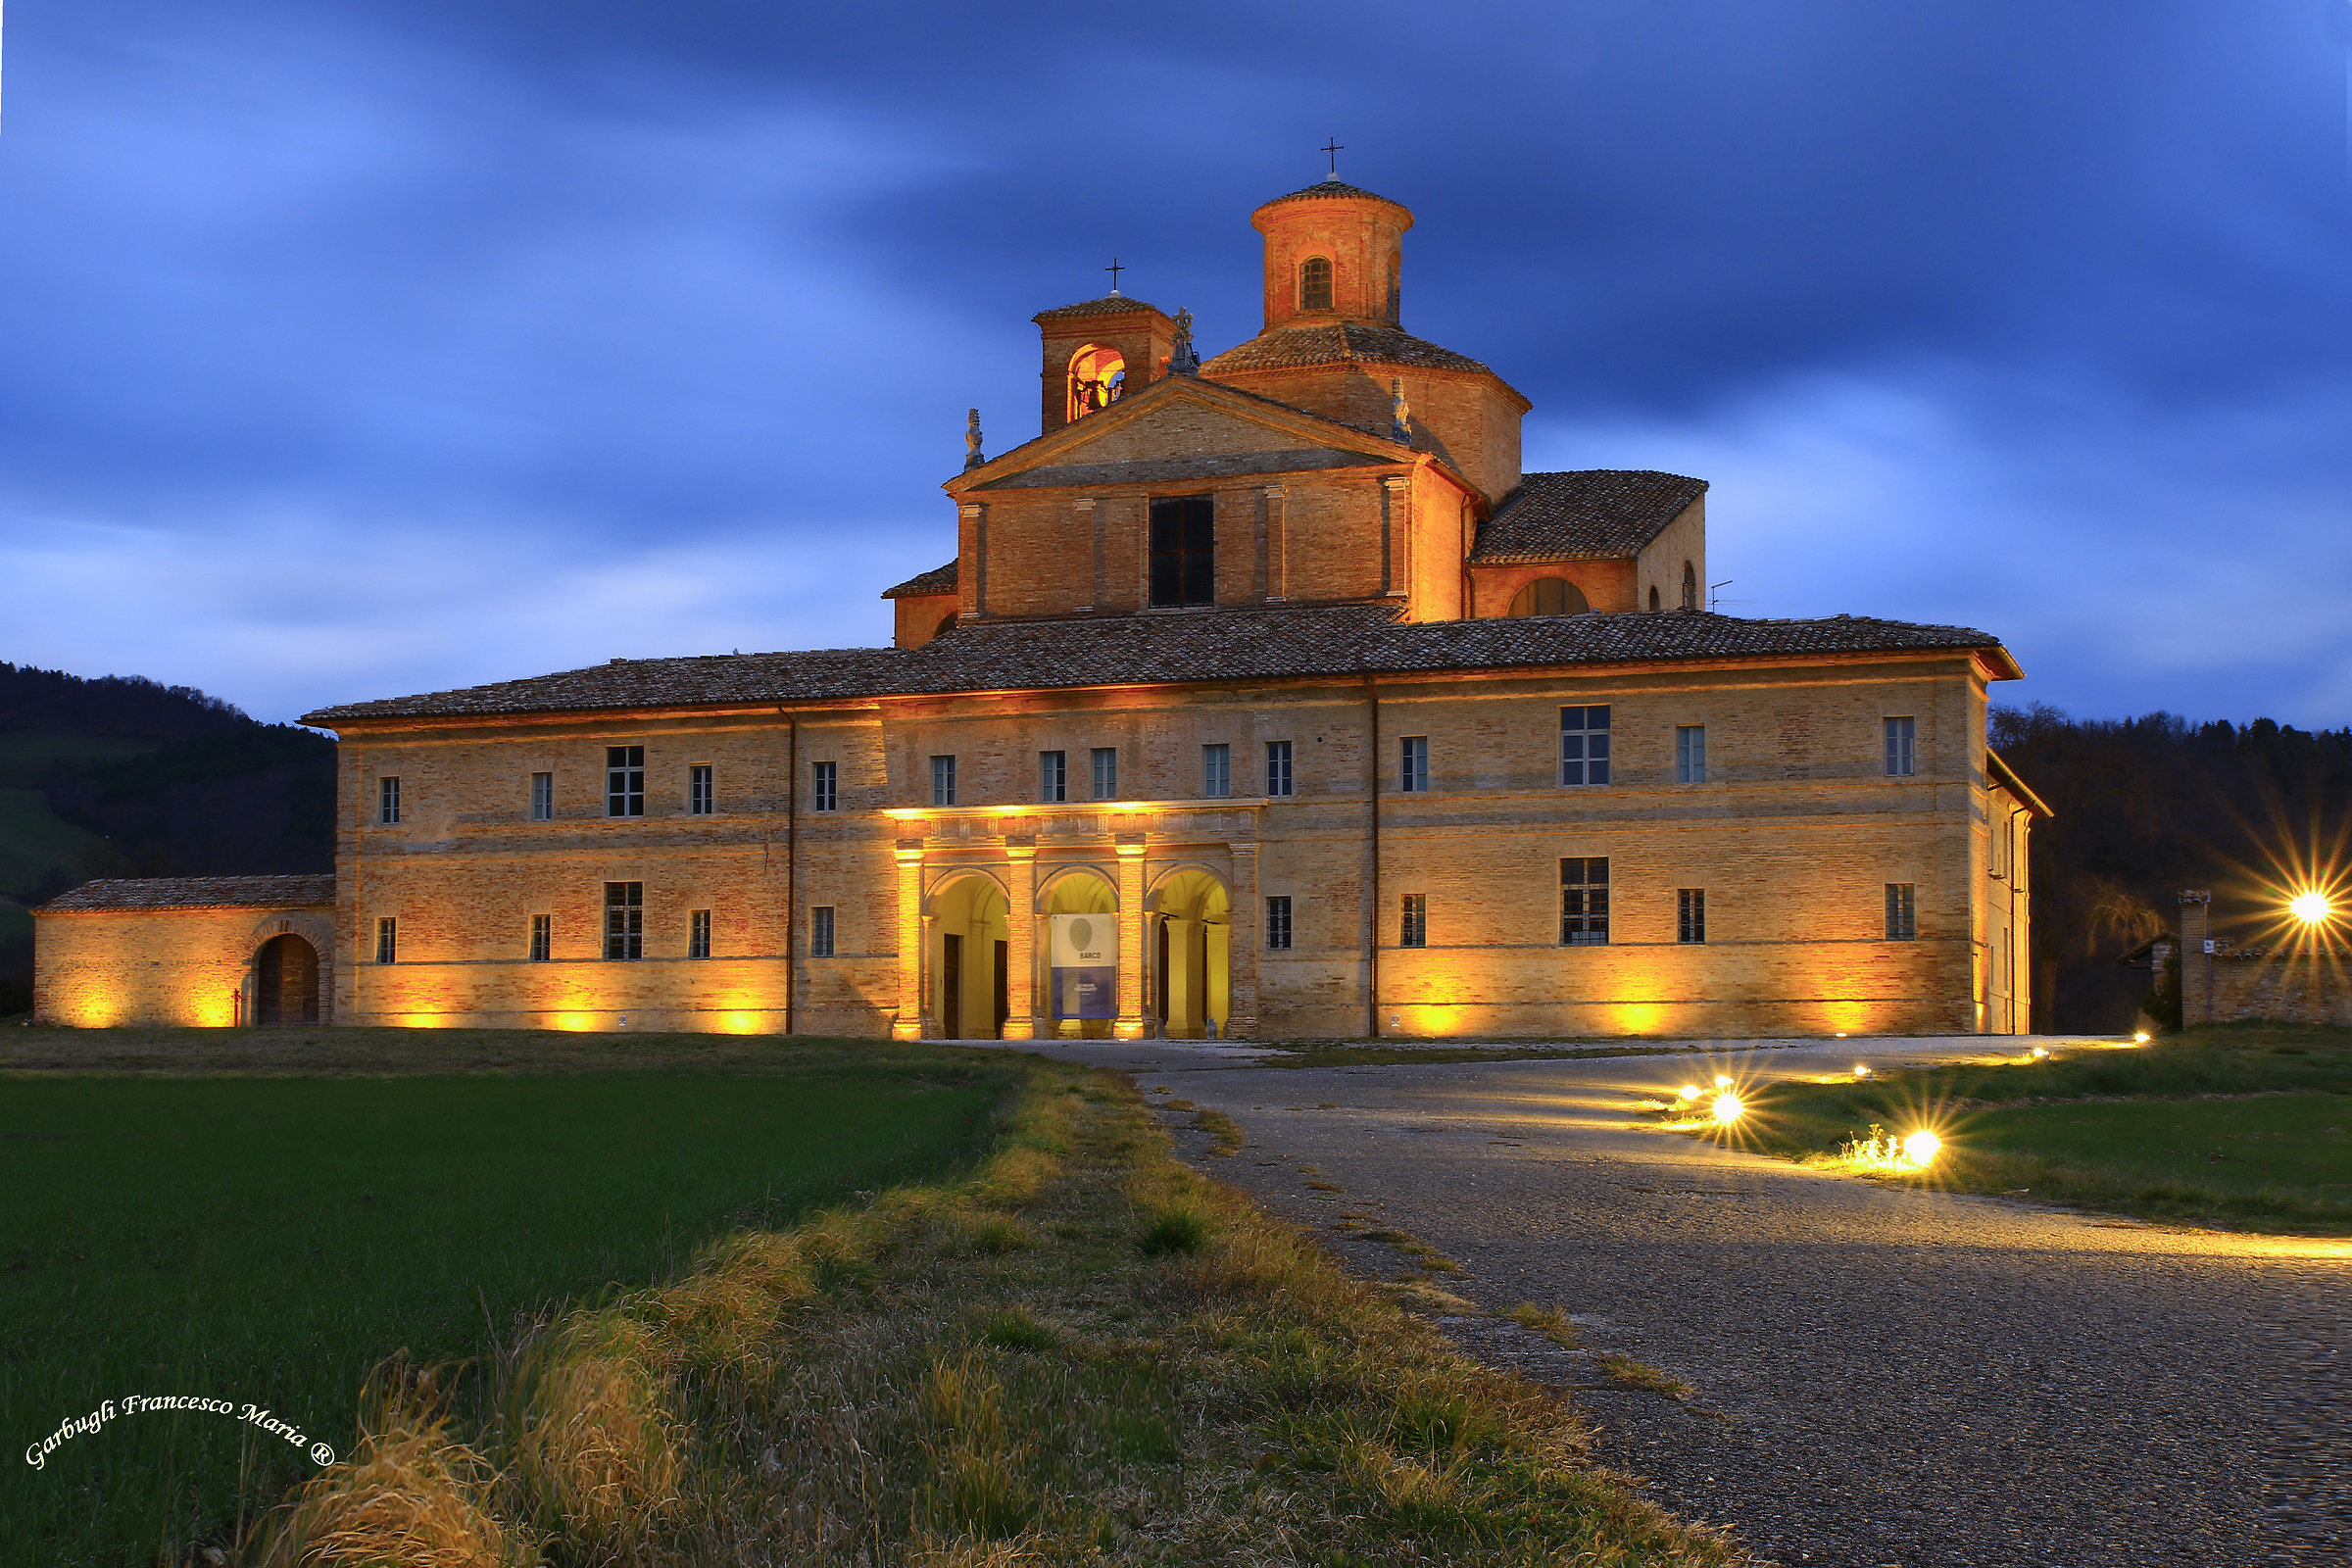 luci accese alla residenza di caccia del Duca d'Urbino...